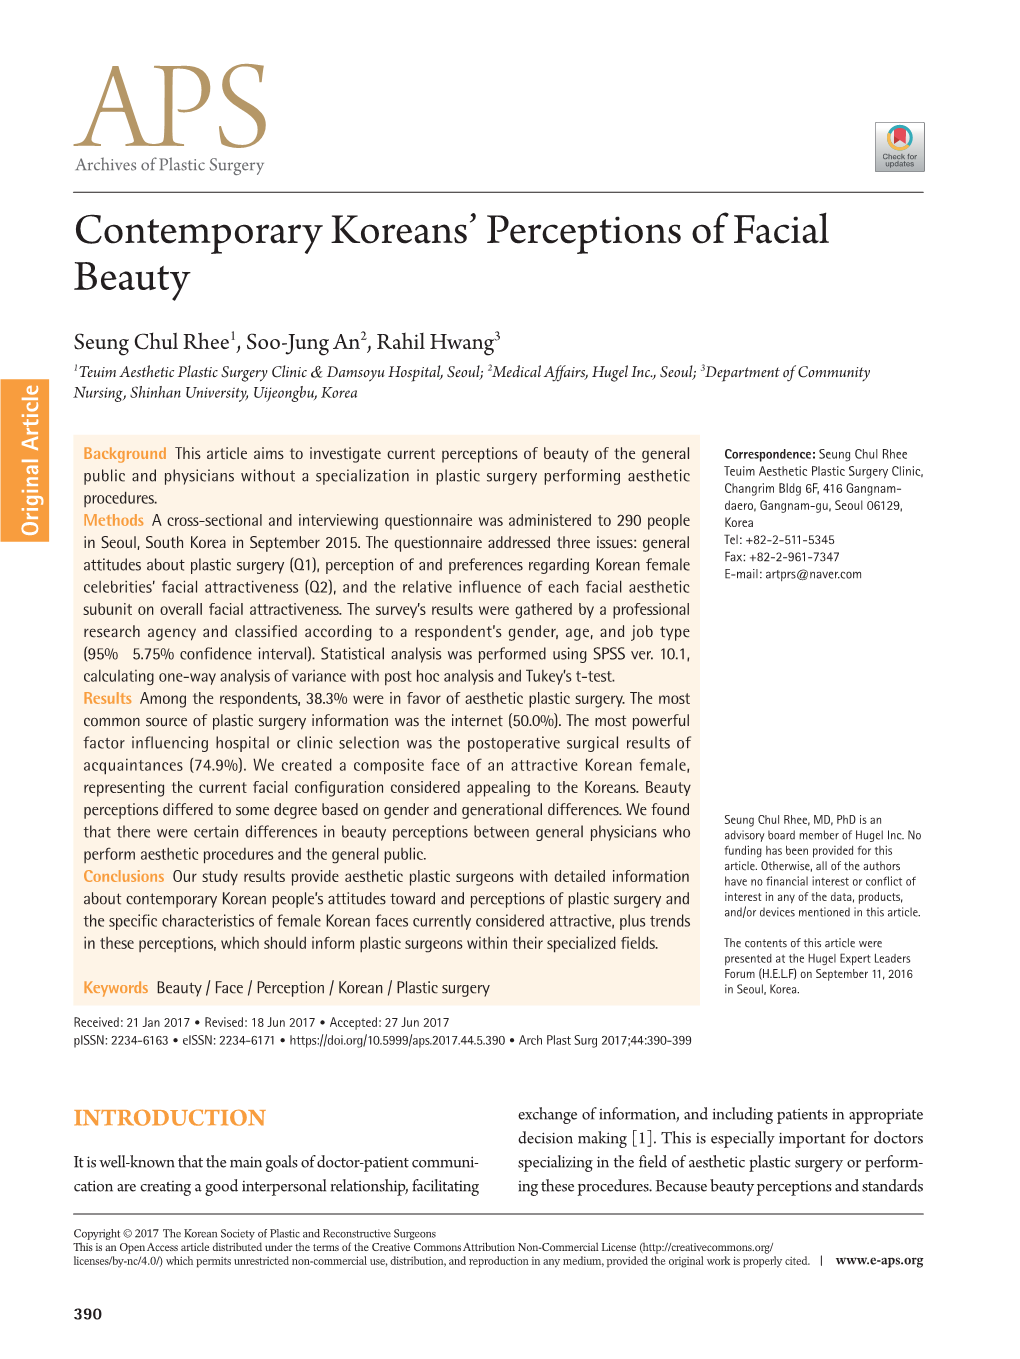 Contemporary Koreans' Perceptions of Facial Beauty